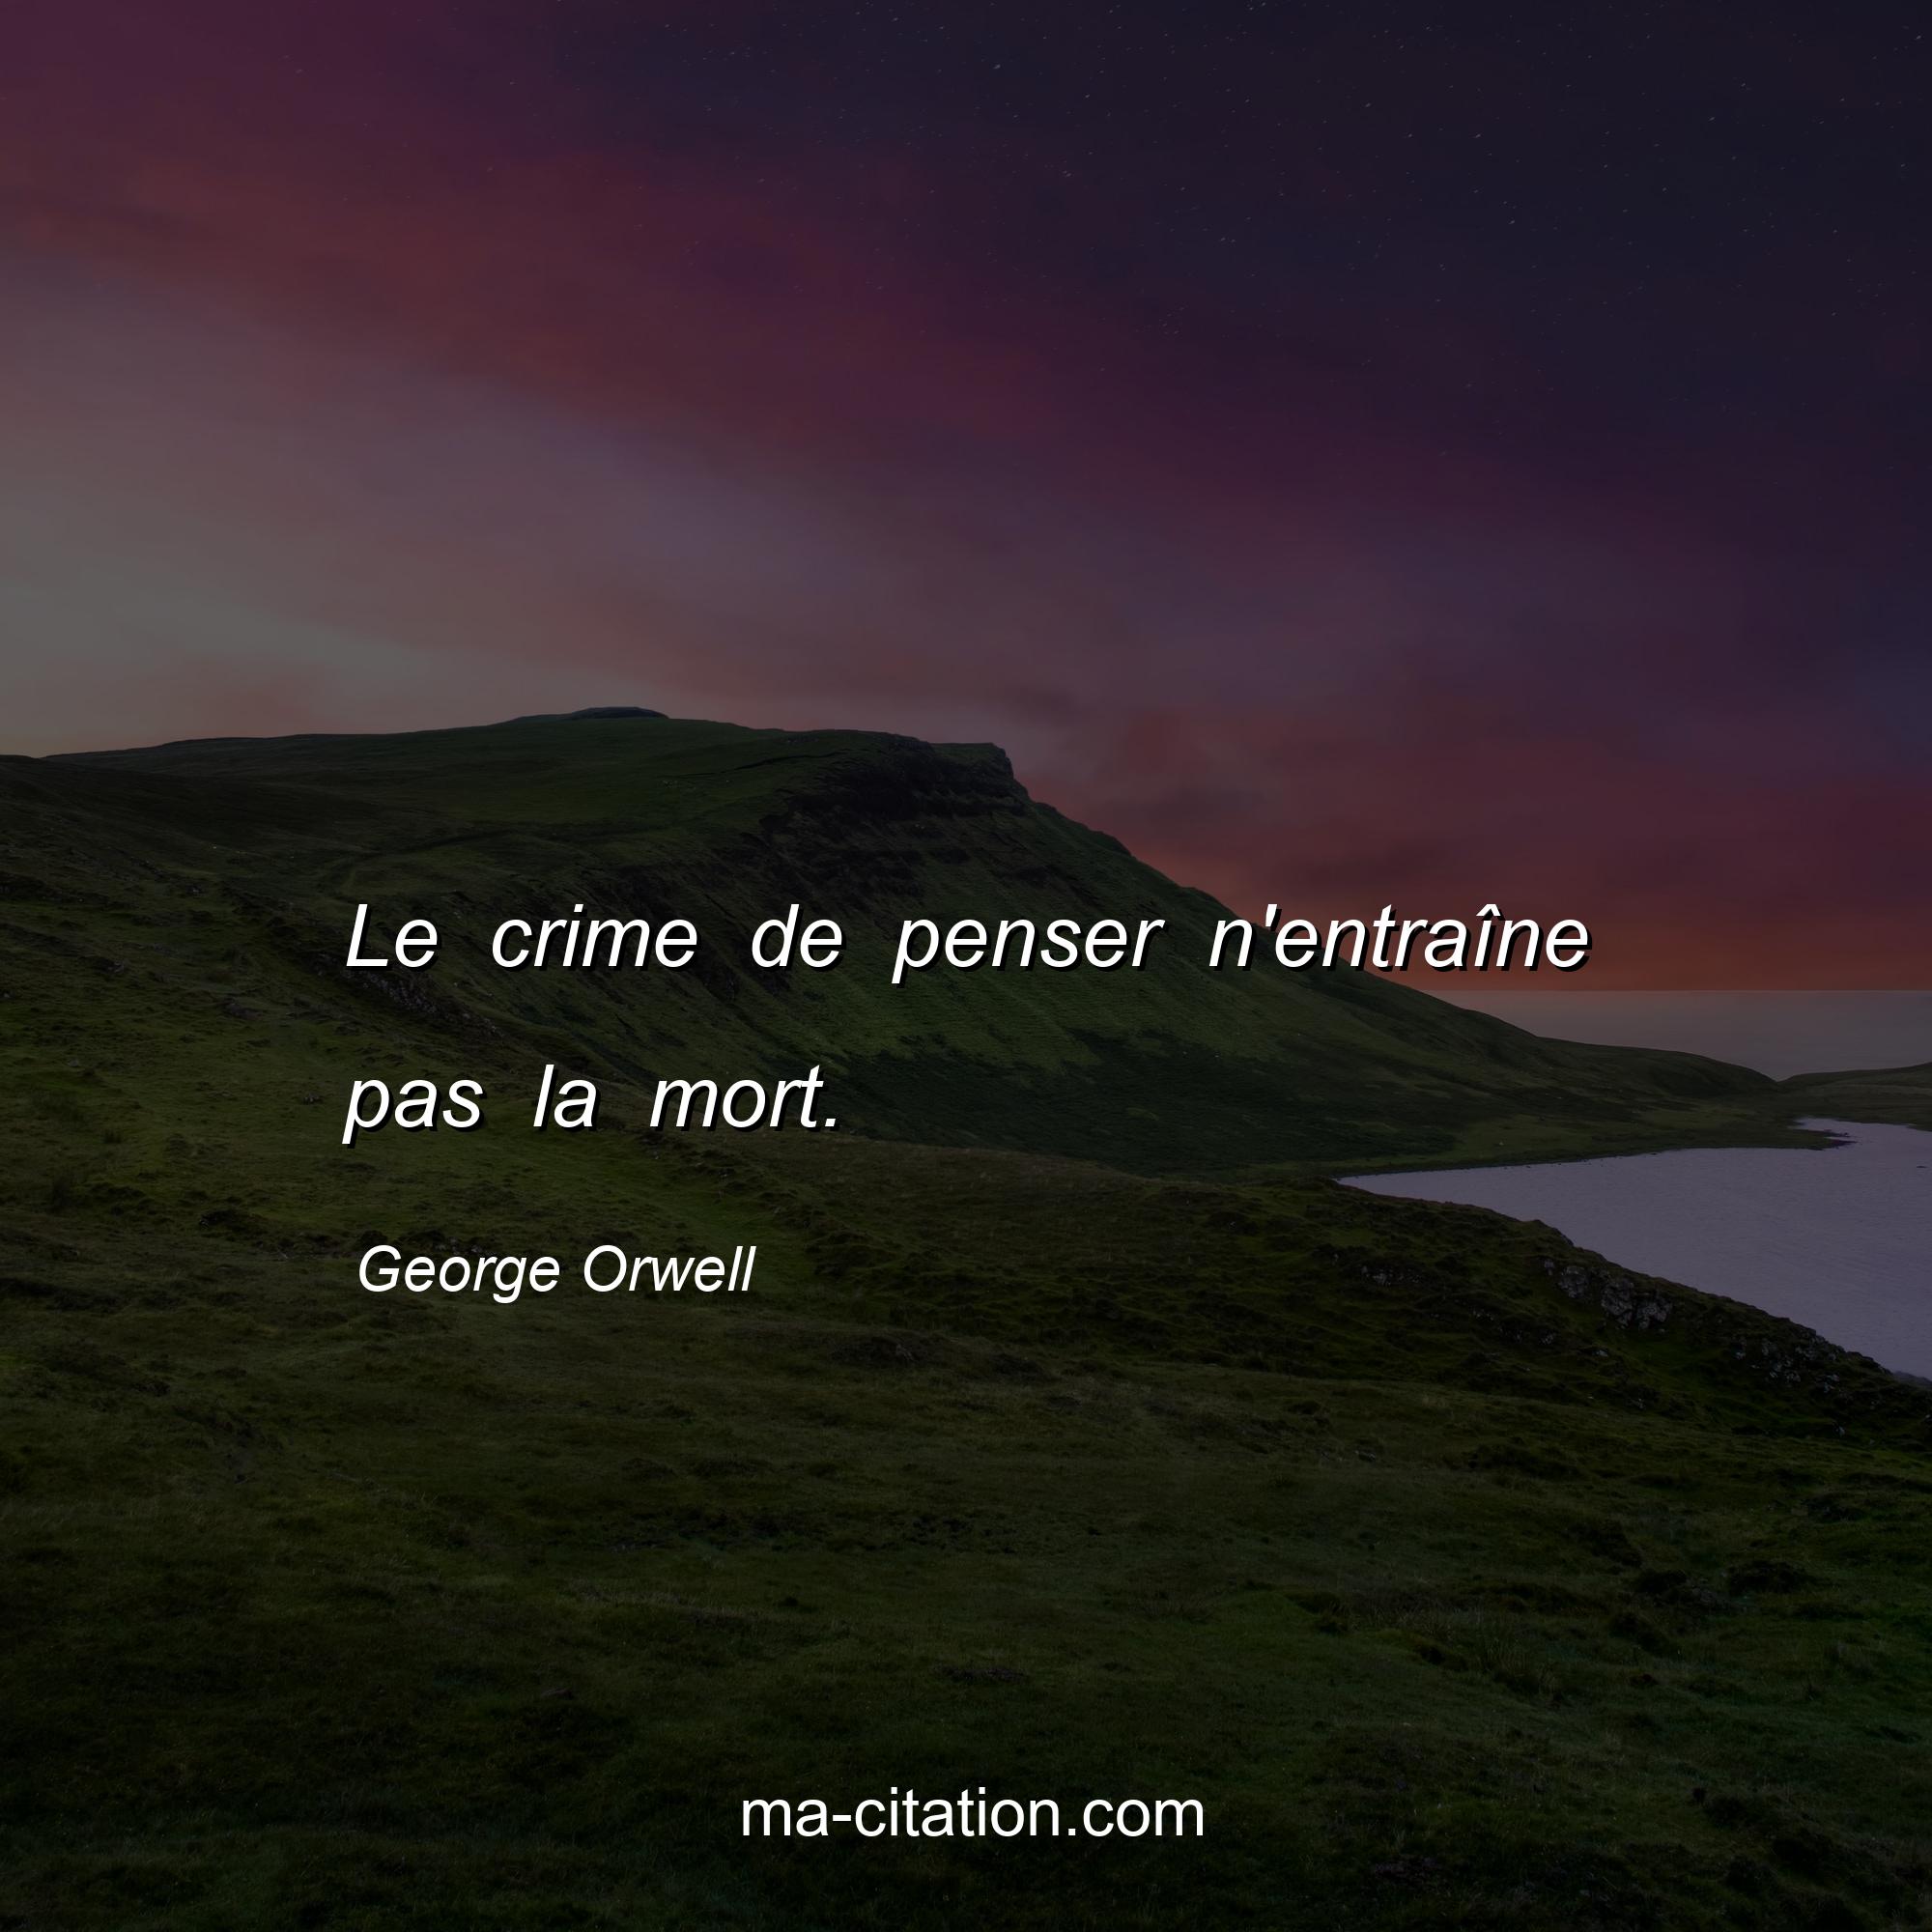 George Orwell : Le crime de penser n'entraîne pas la mort.